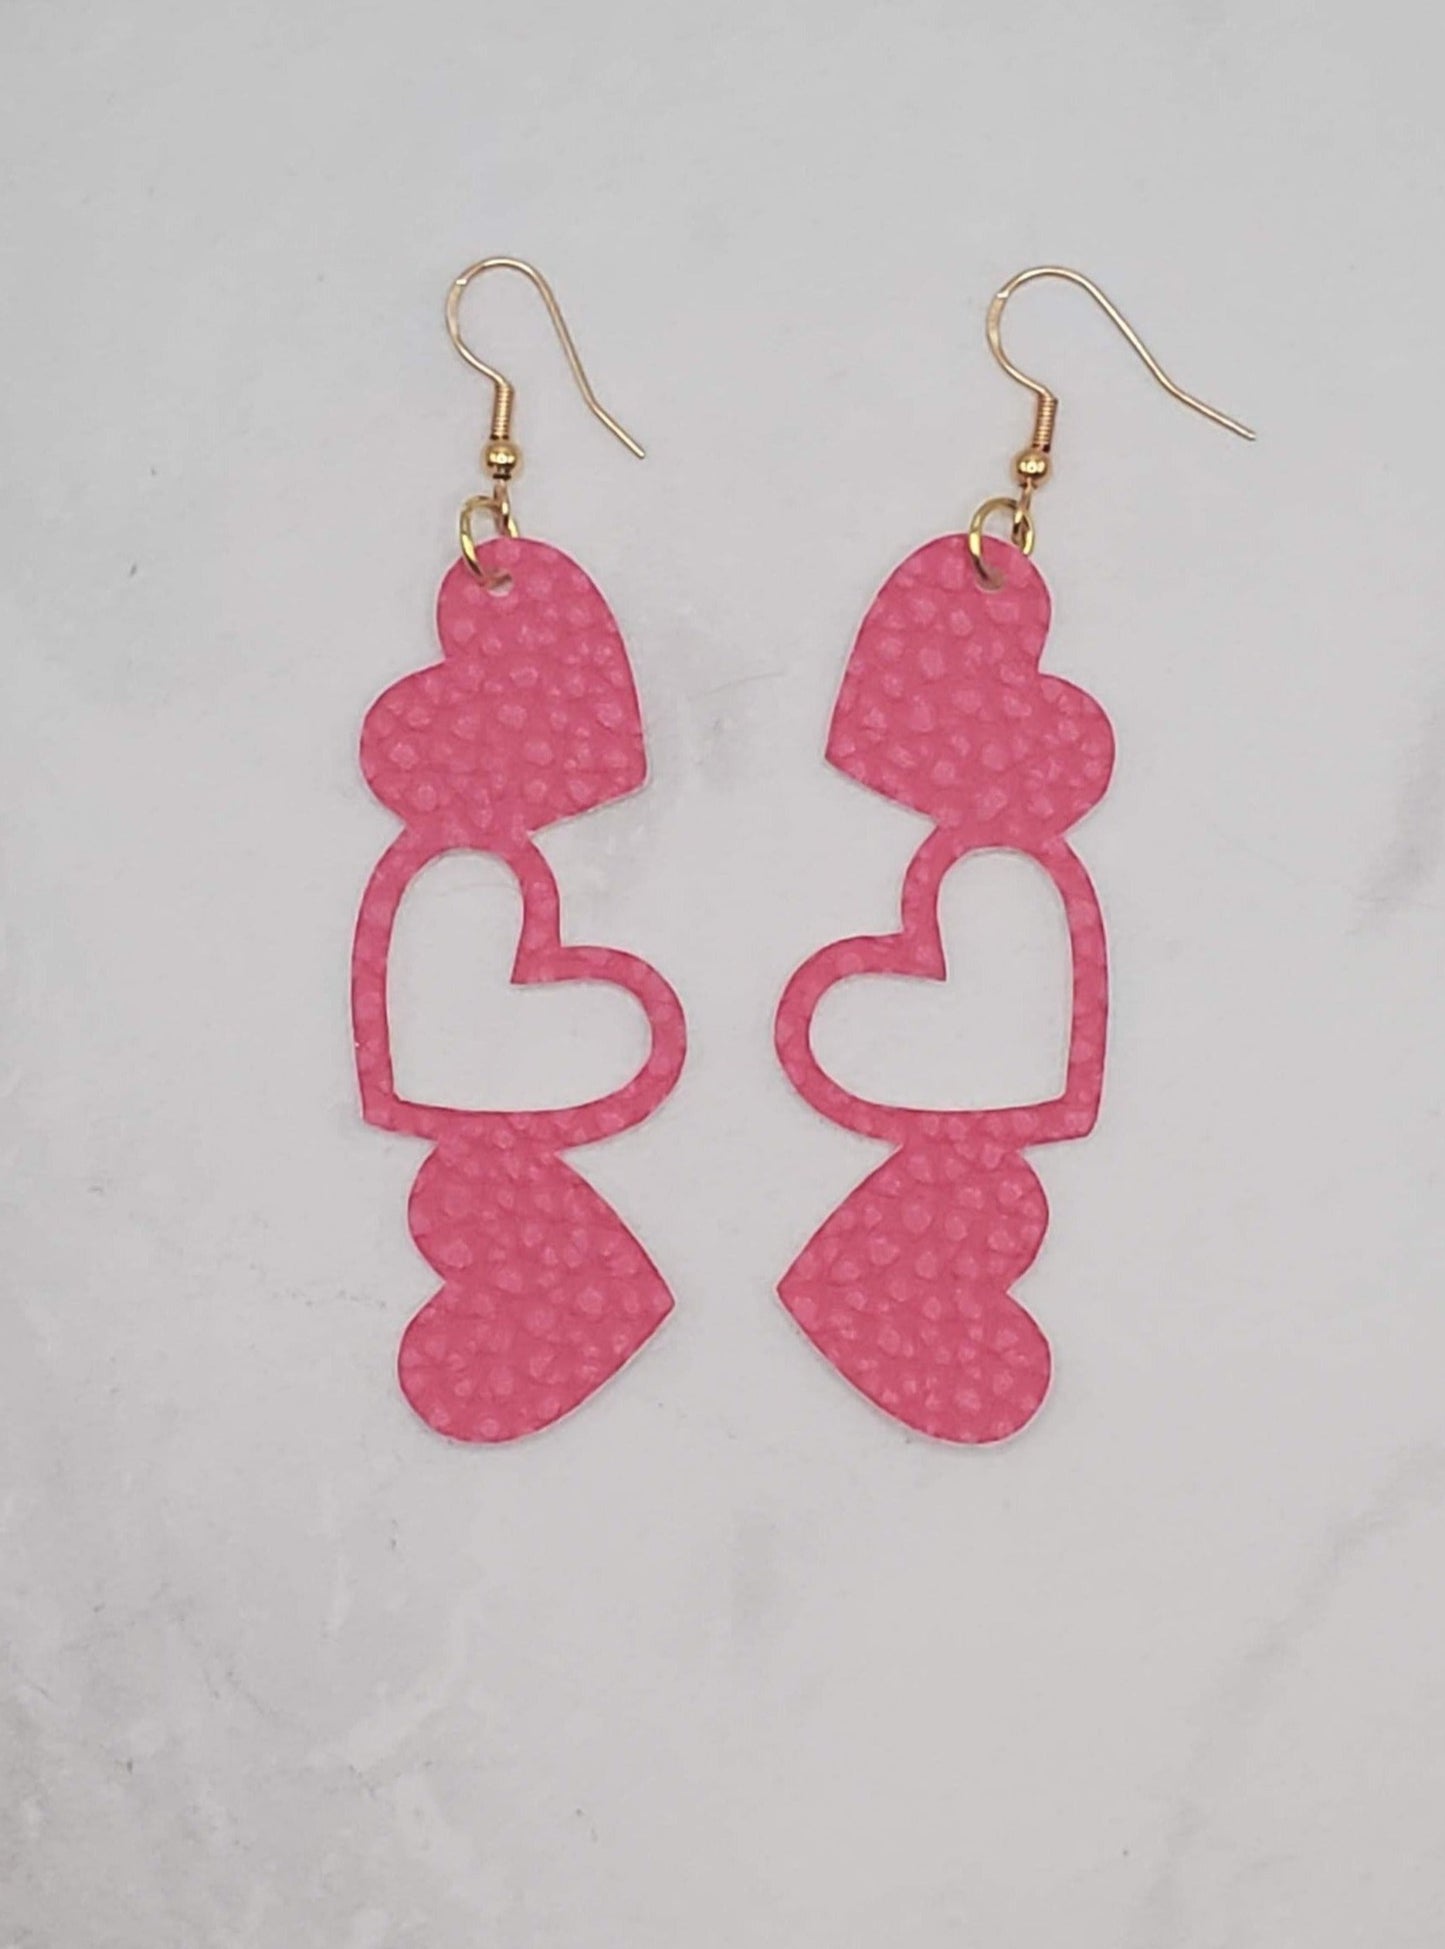 Stacked heart earrings- dark pink faux leather drop earrings - flatlay - braceliss